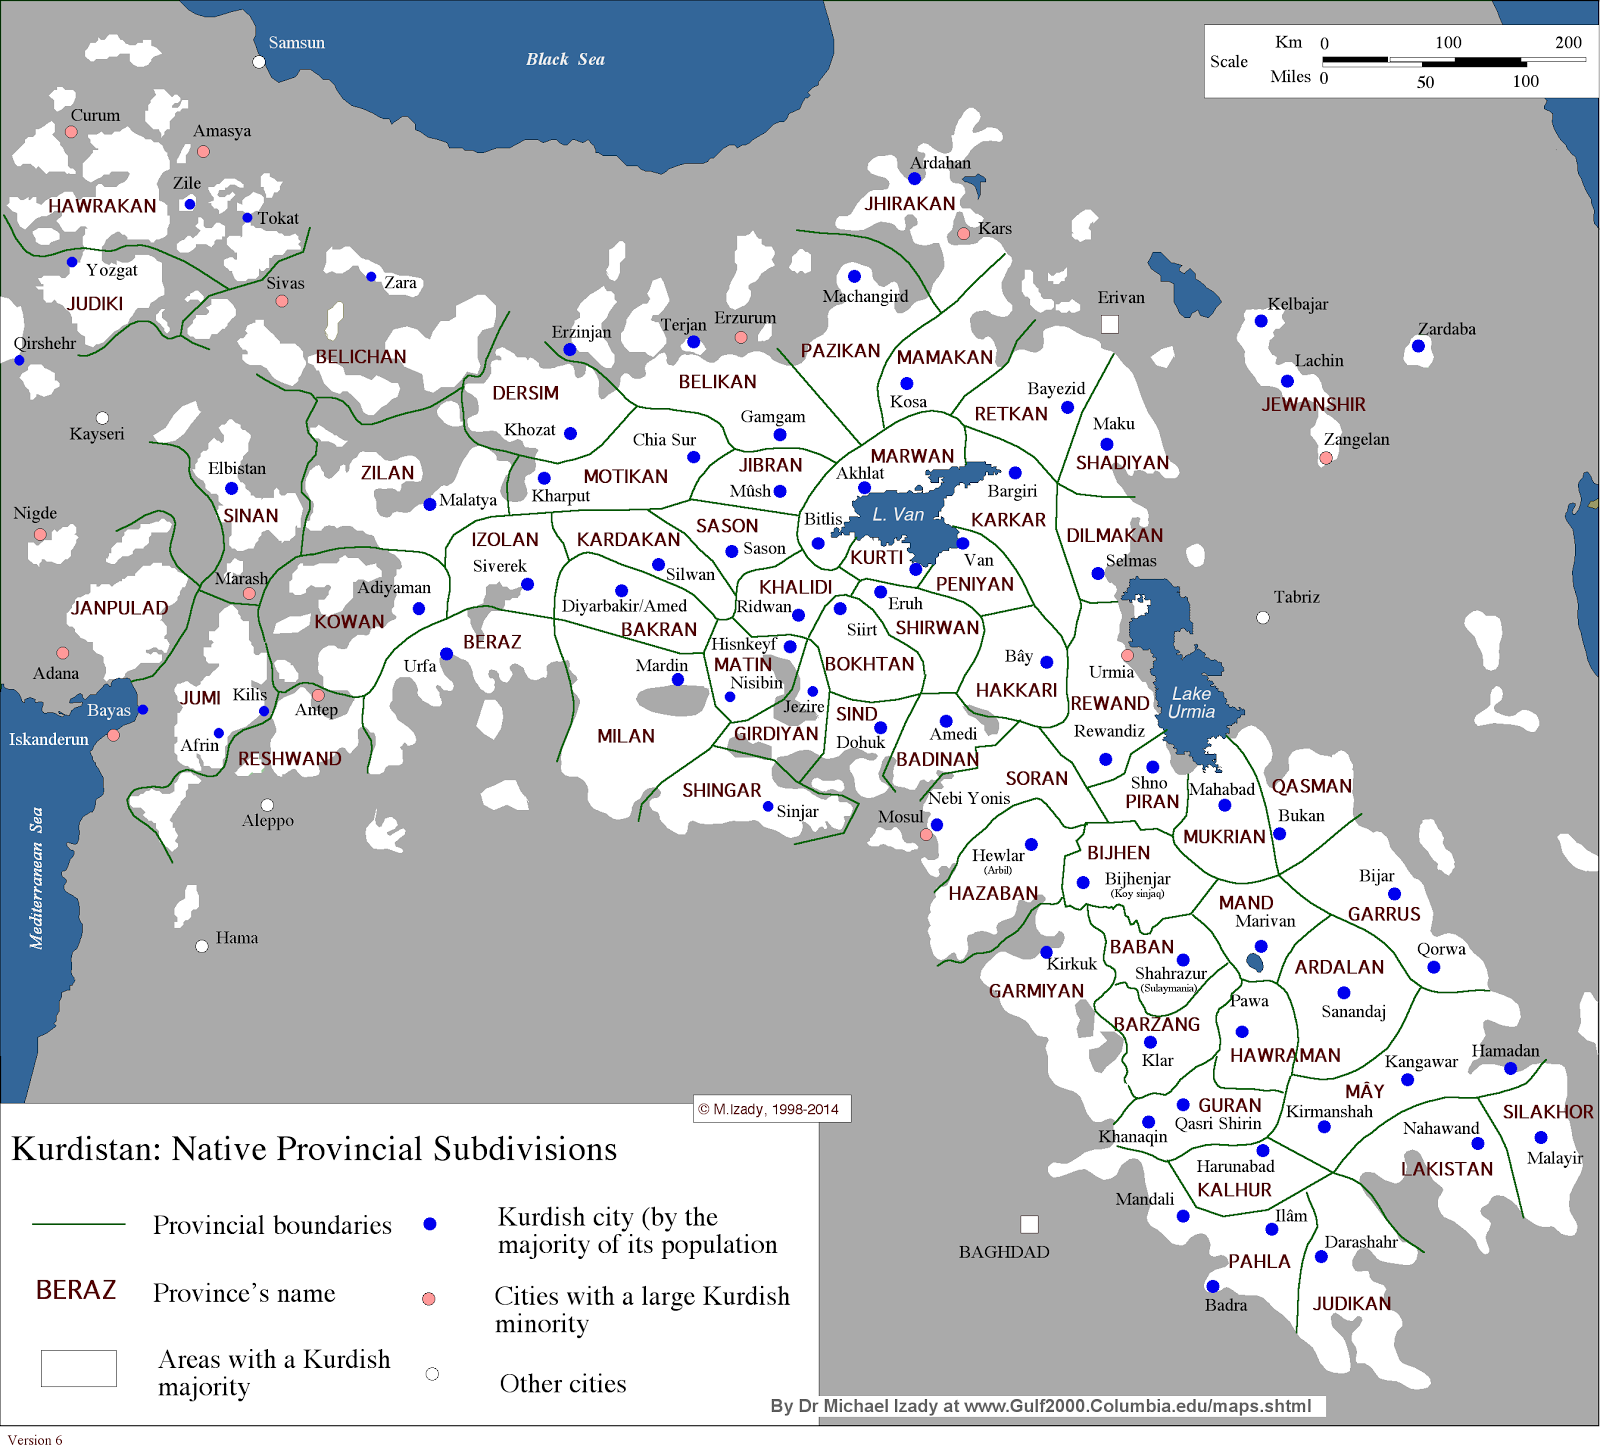 Mehrdad Izady'in haritalarında Redkiler